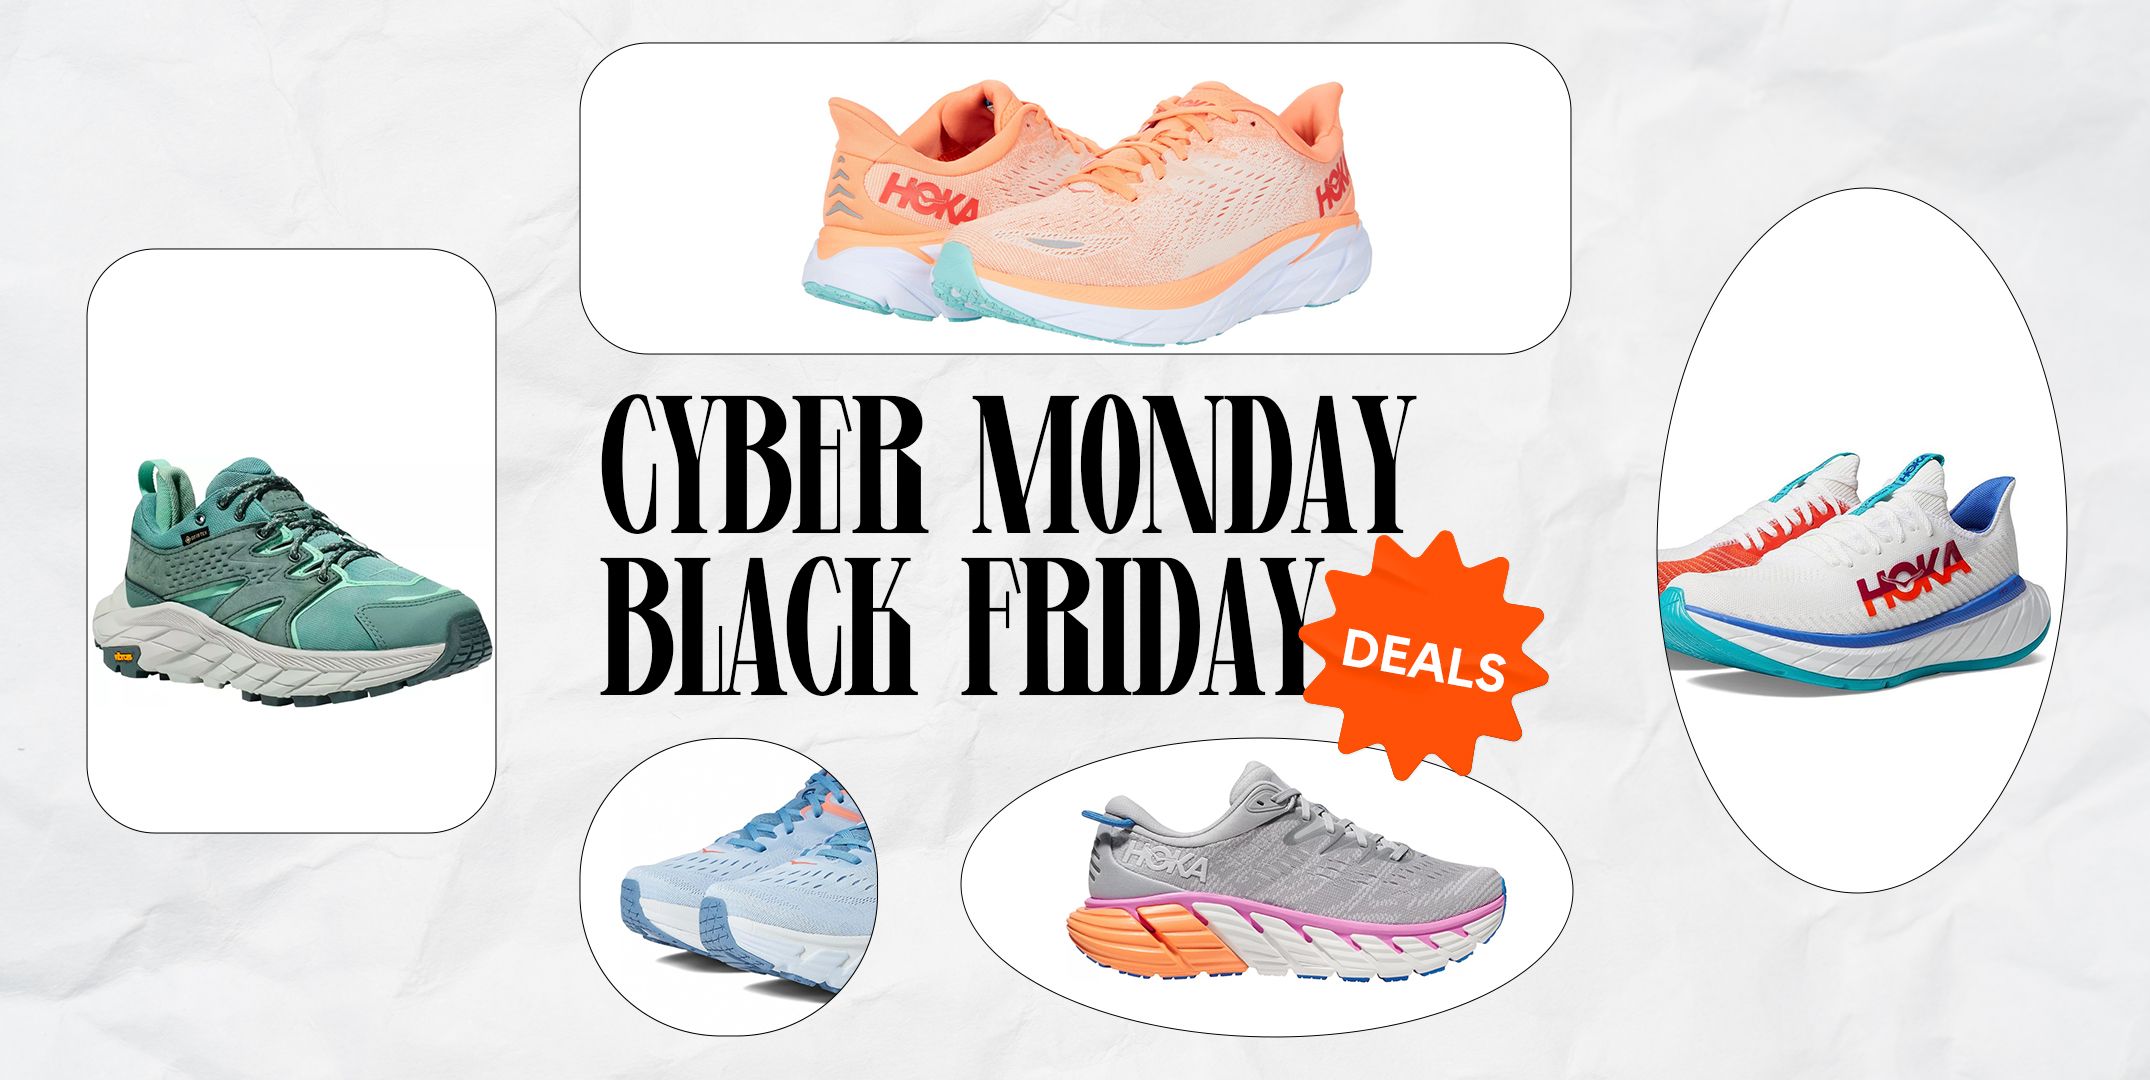 Hiking - Cyber Deals - Shoes - Sale - Cyber Week Deals